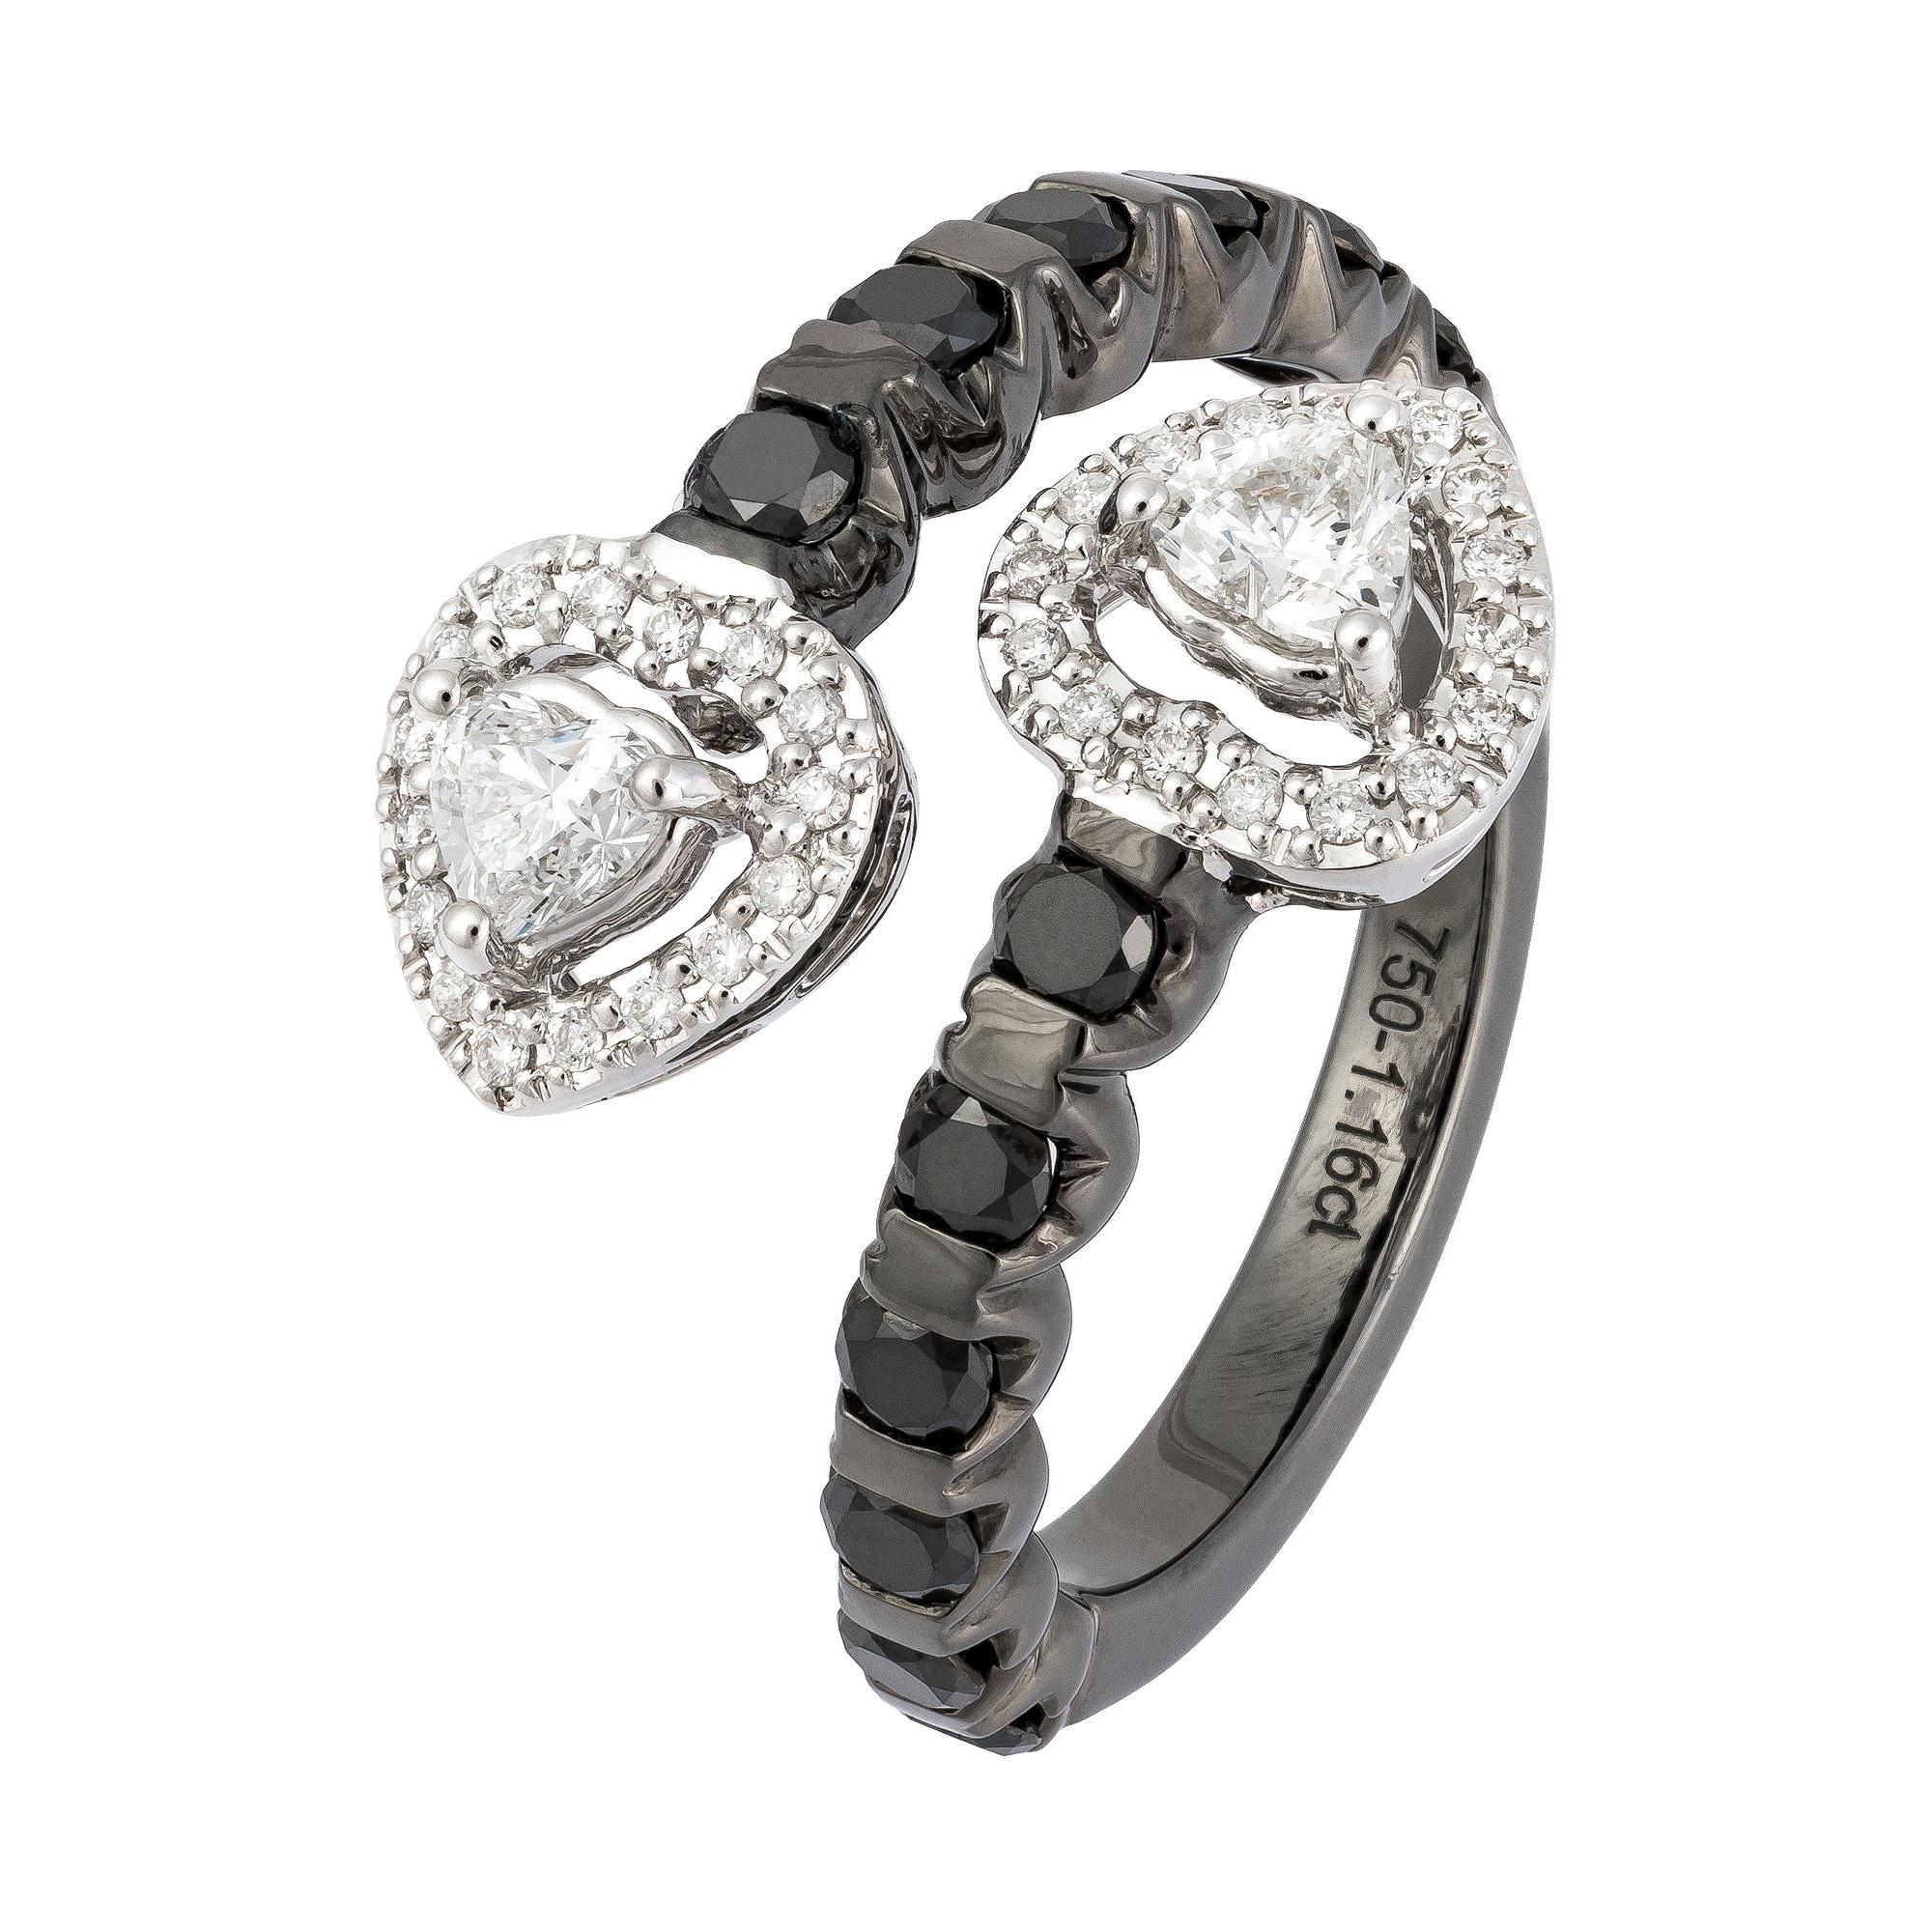 Impressive Black White Diamond White Gold 18K Ring for Her For Sale